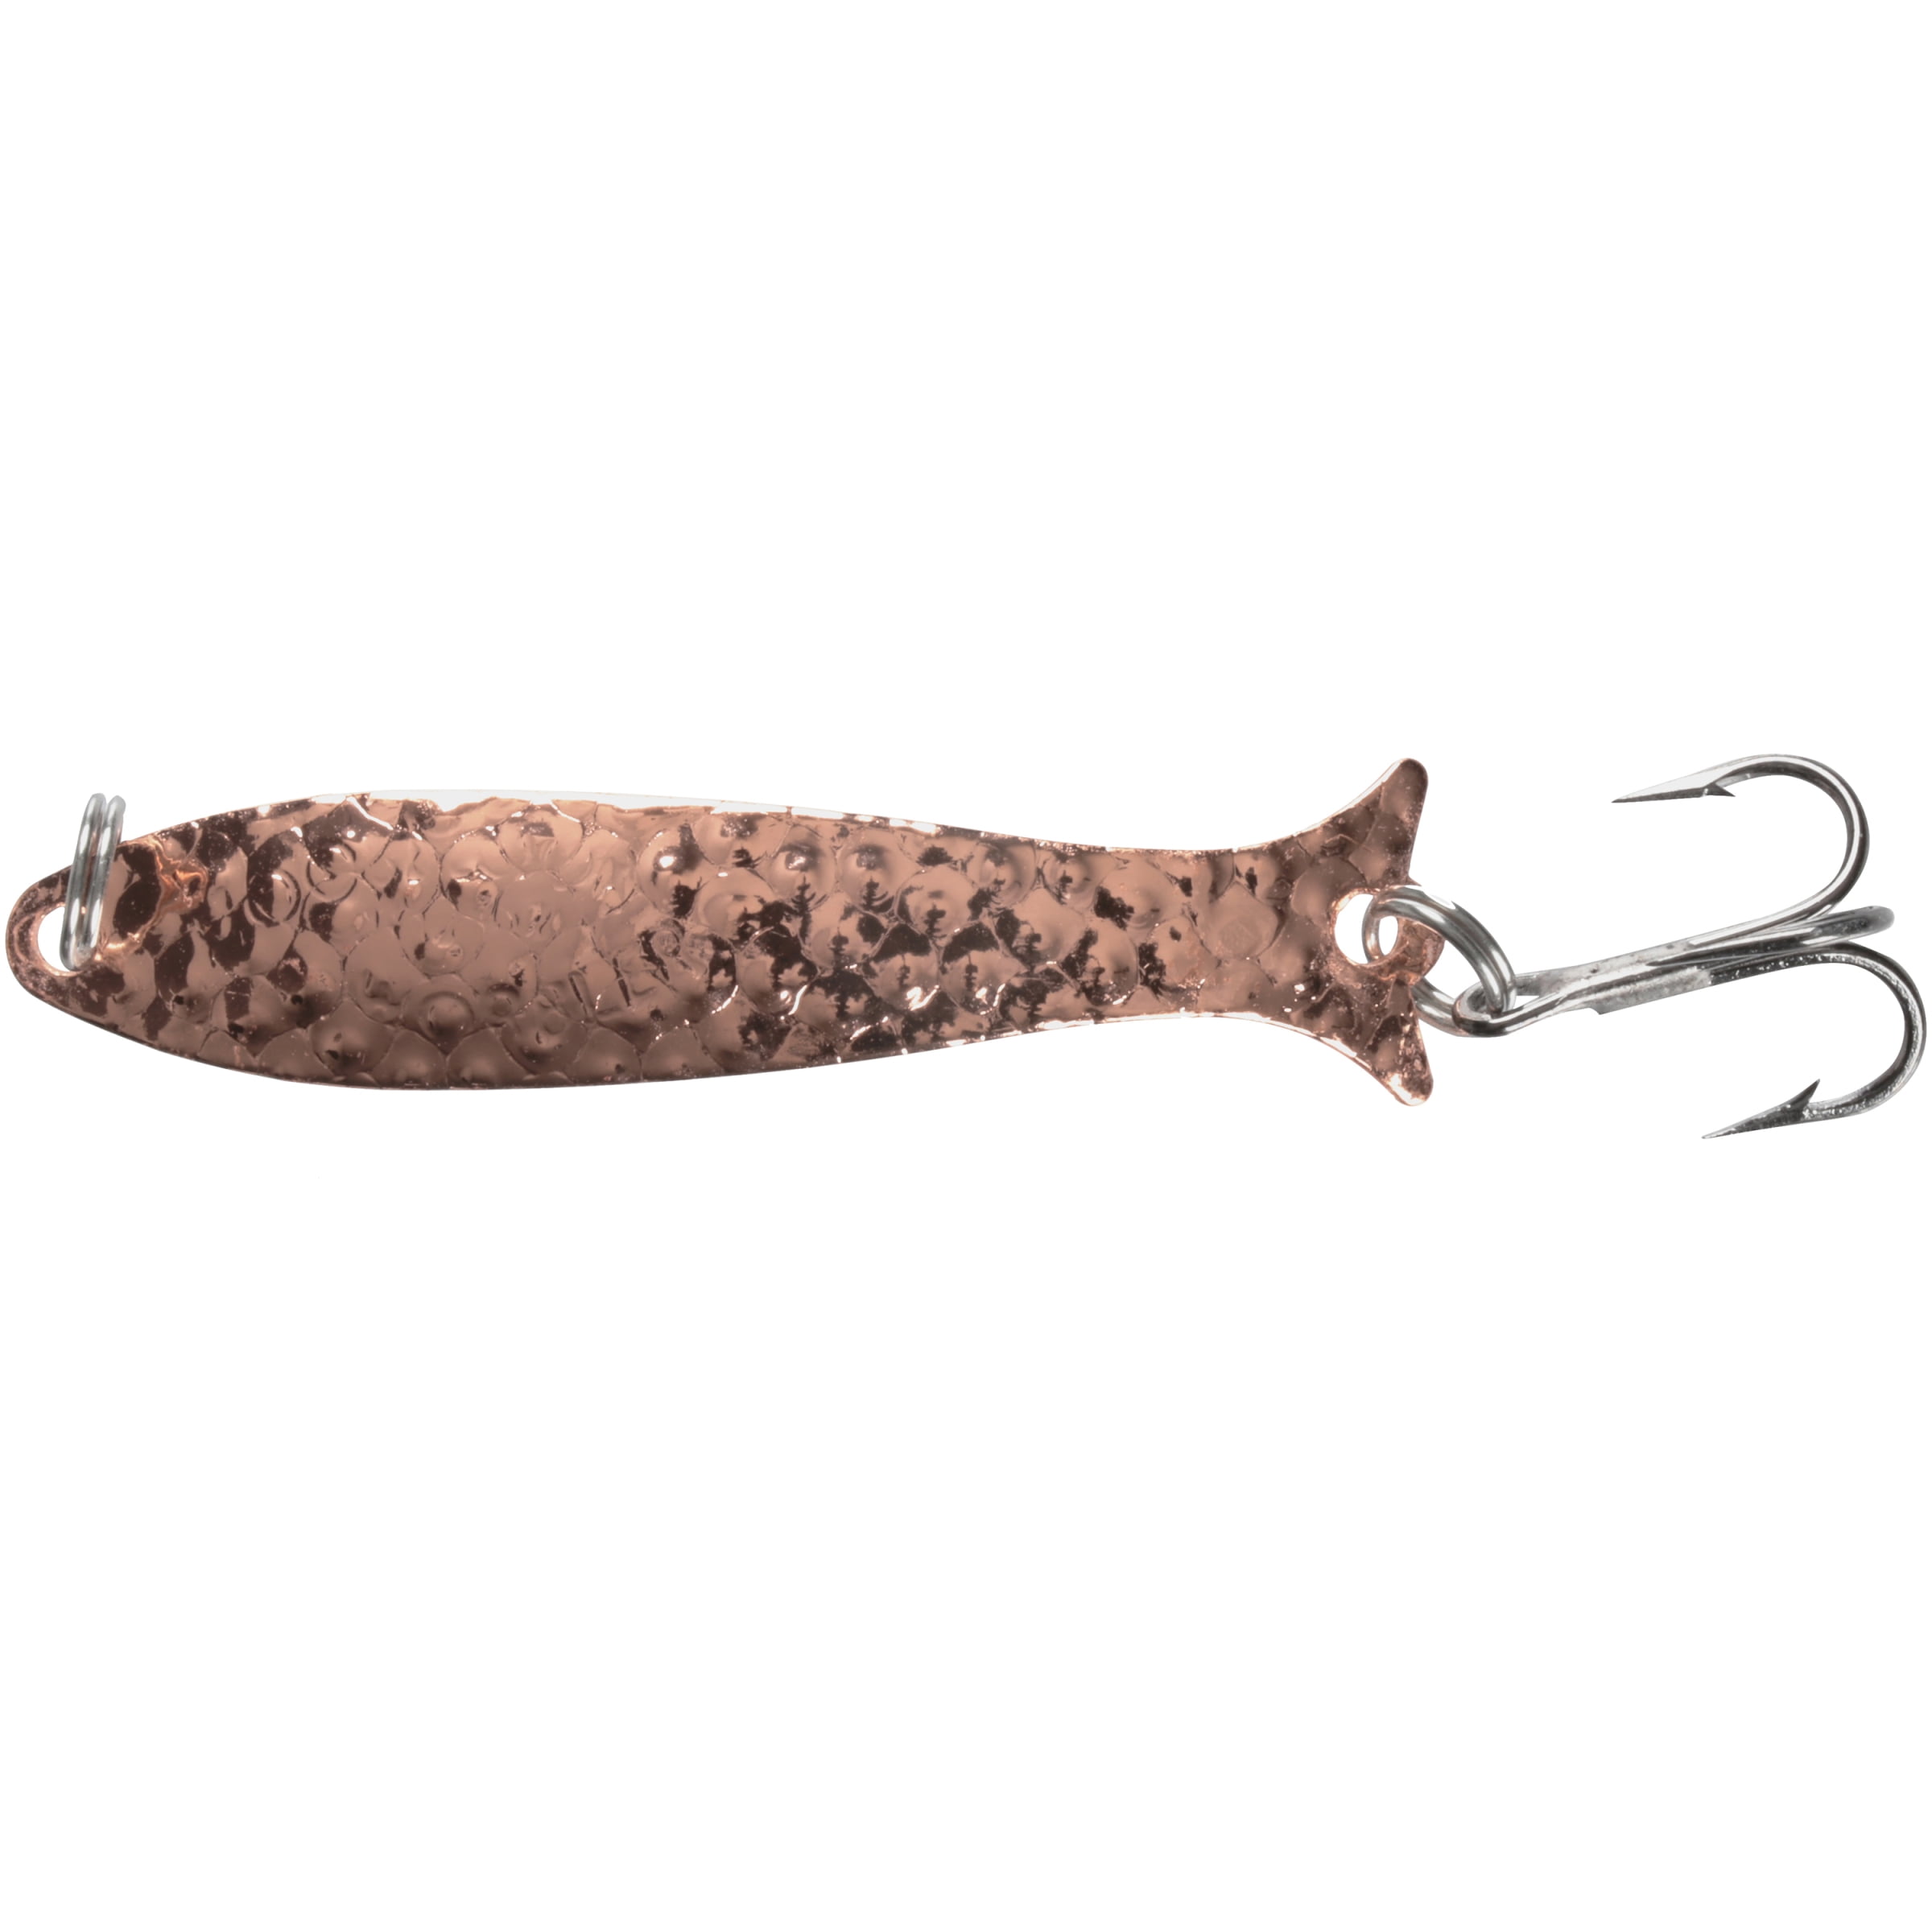 Mooselook Wobbler, Midget - Copper Nuwrinkle, Fishing Spoons